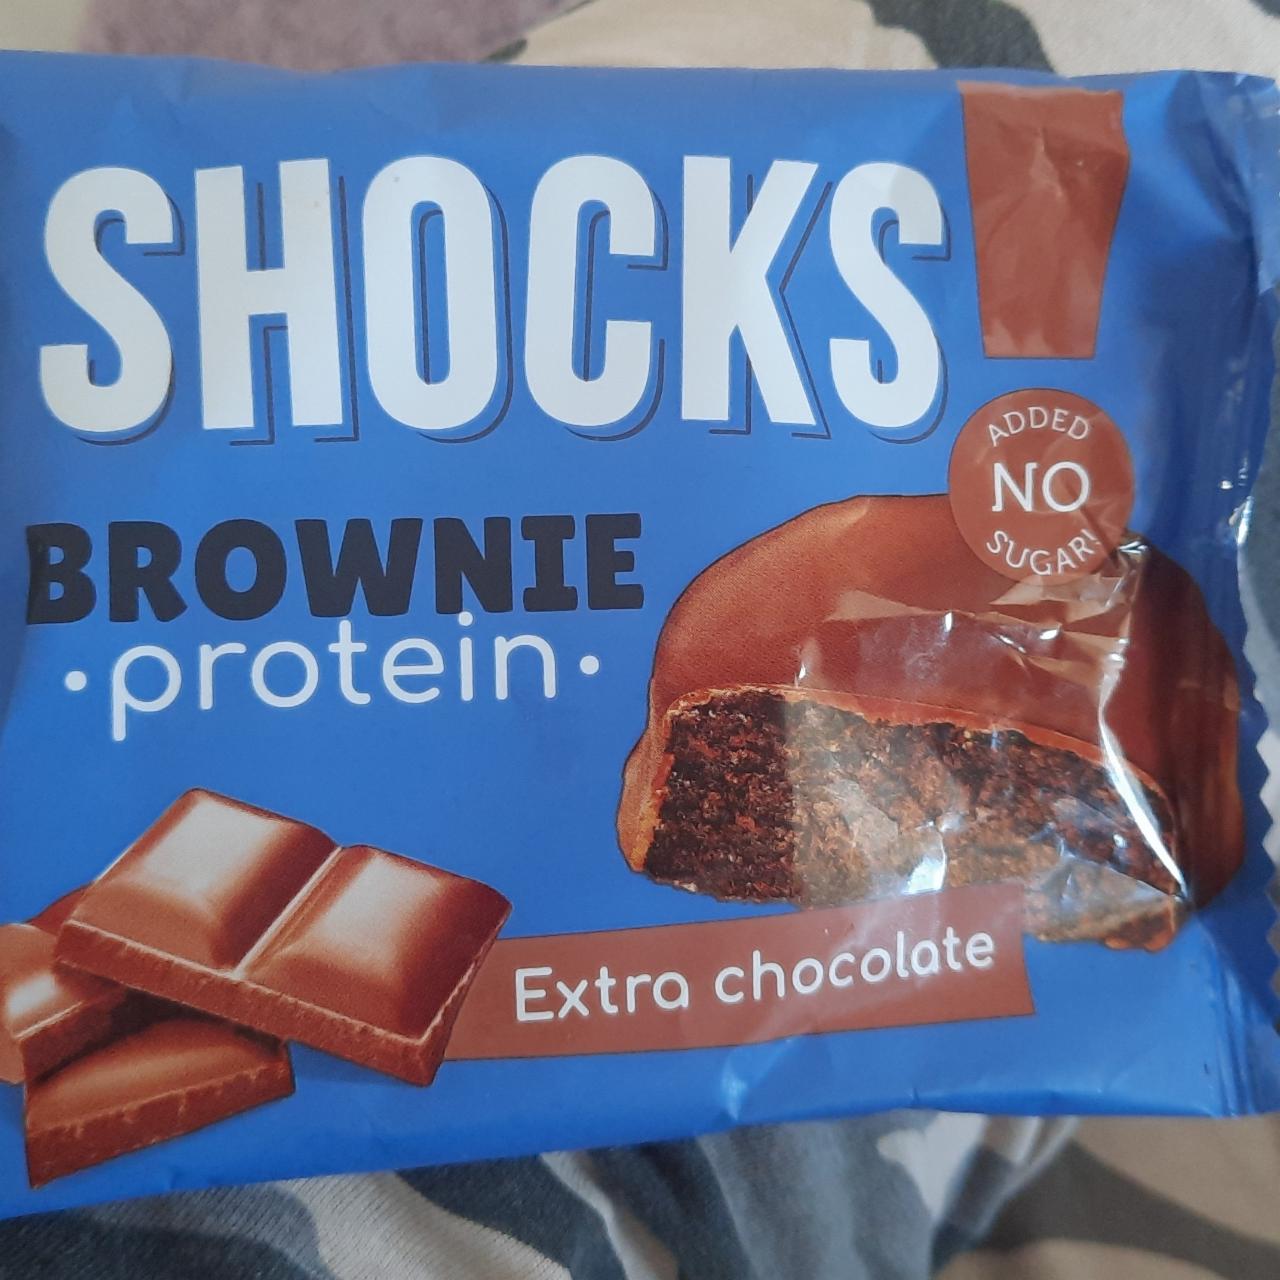 Фото - печенье протеиновое брауни шоколадное Extra chocolate Shocks